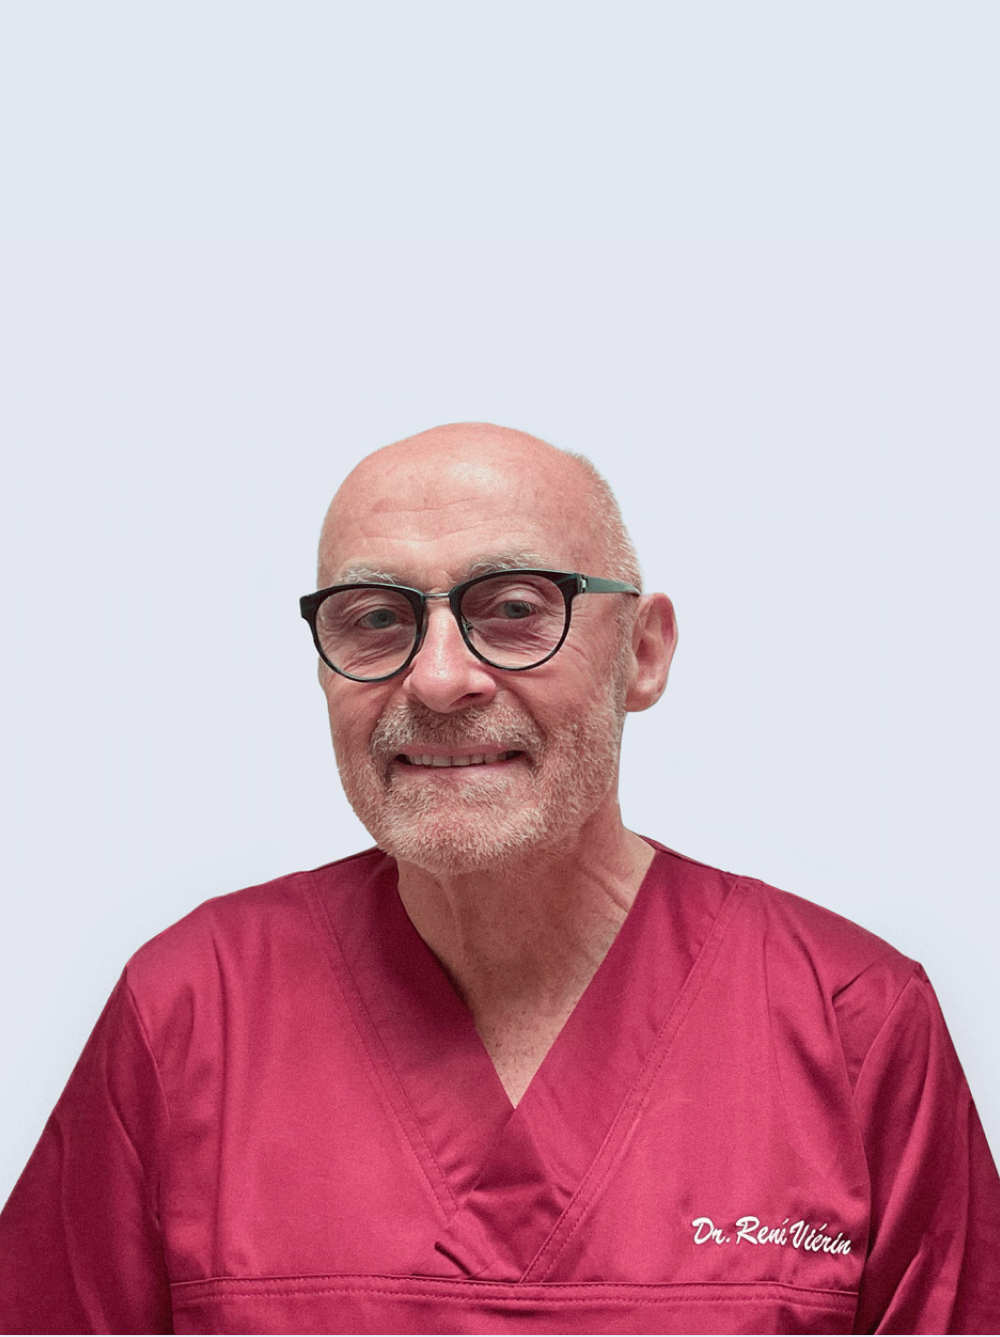 Membro del team, nome Dr. René Viérin, ruolo Dentista